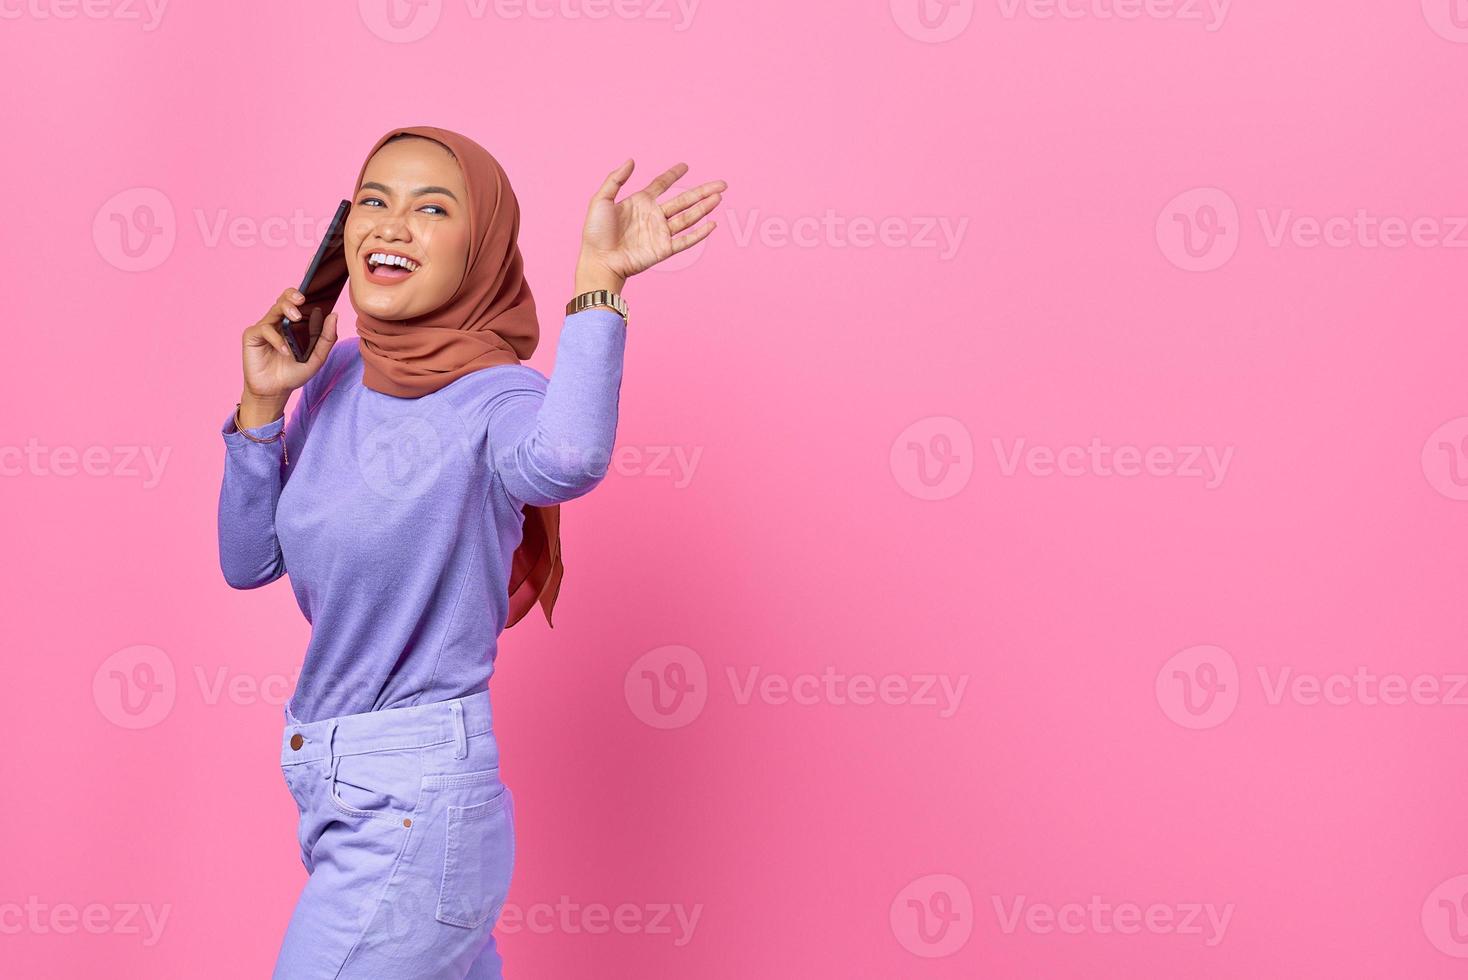 Sonriente joven mujer asiática hablando por teléfono móvil mientras agita el gesto de la mano sobre fondo rosa foto